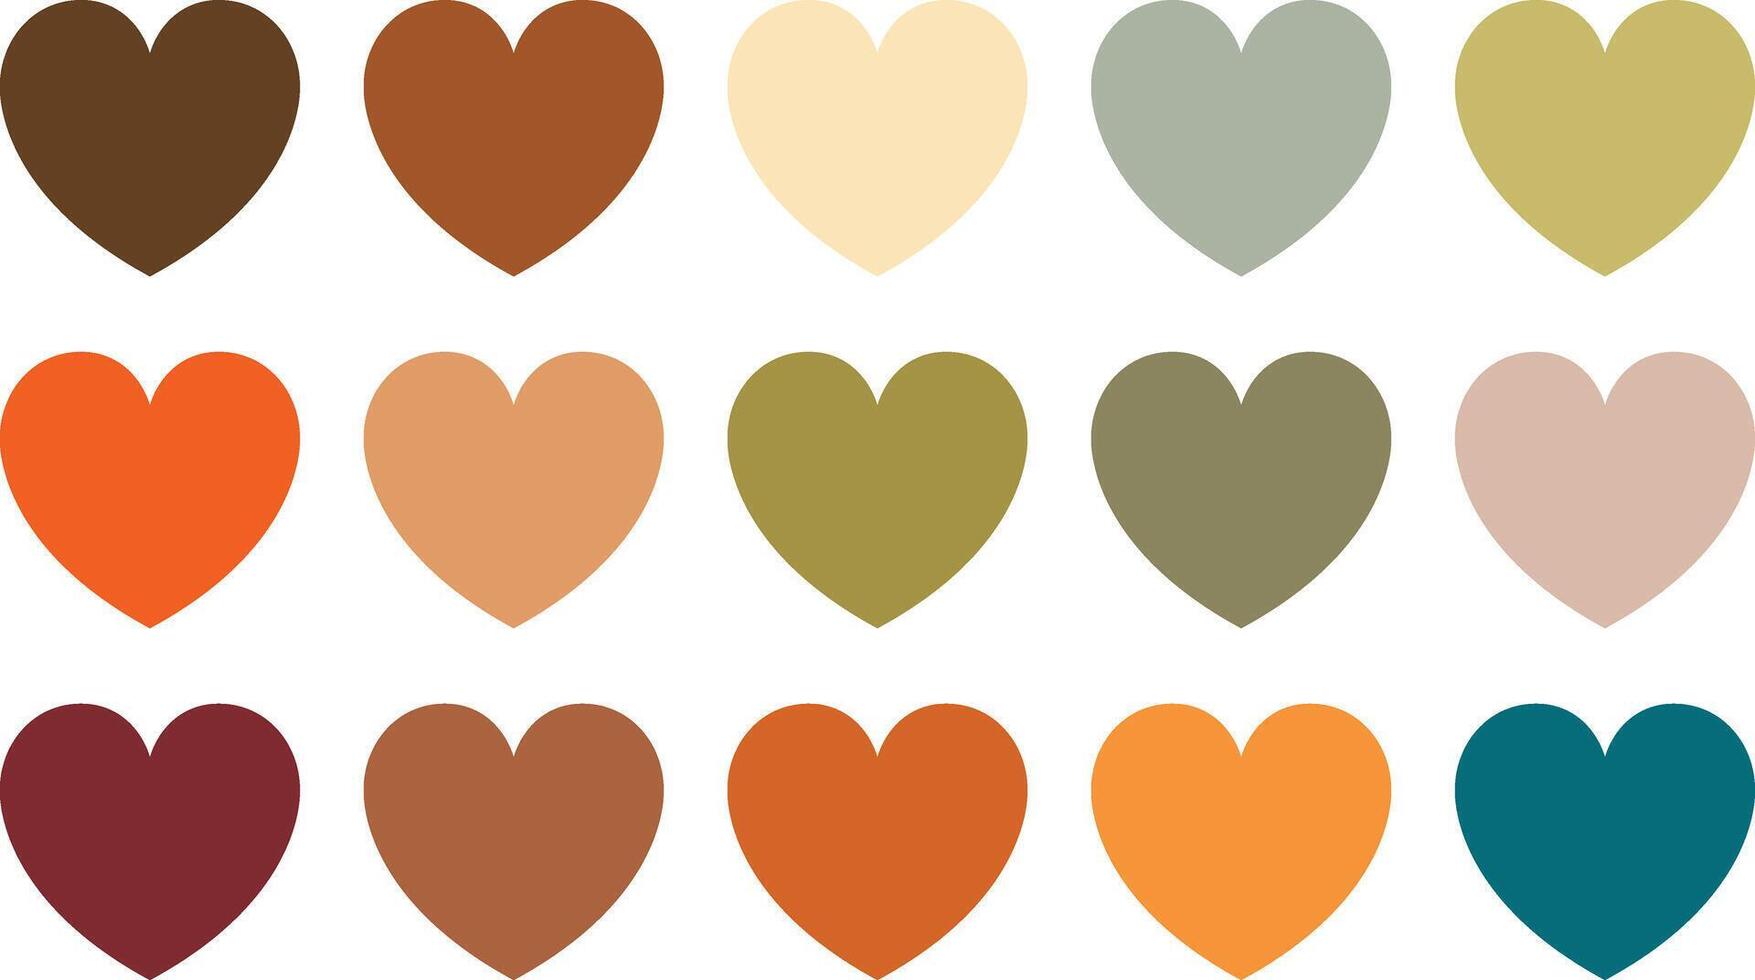 reeks van aards tonen gekleurde harten. groep van hart pictogrammen in verschillend aards tonen kleur tinten vector